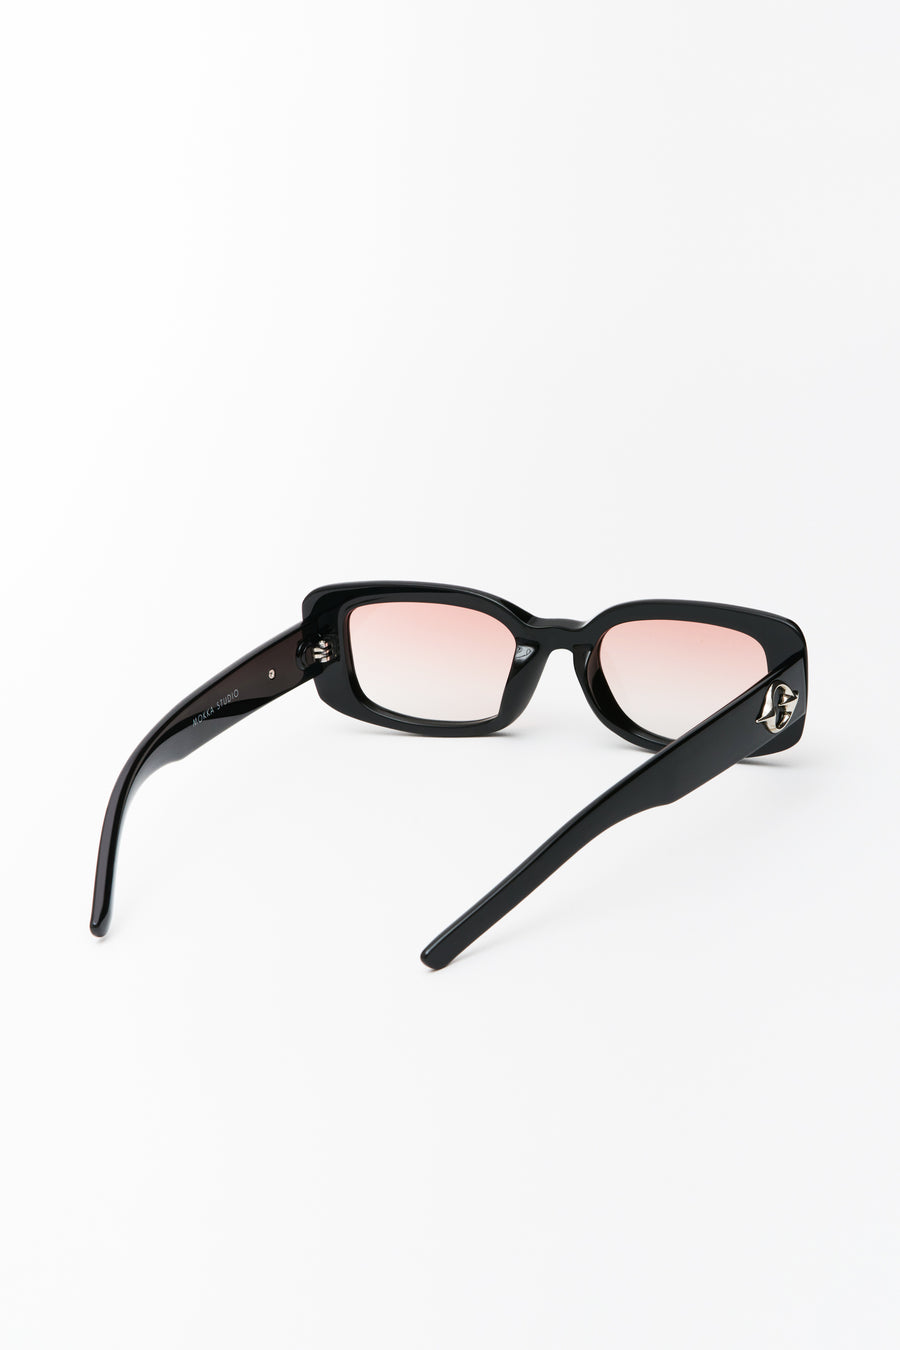 Bobby Sunglasses Black/Sunrise Lens